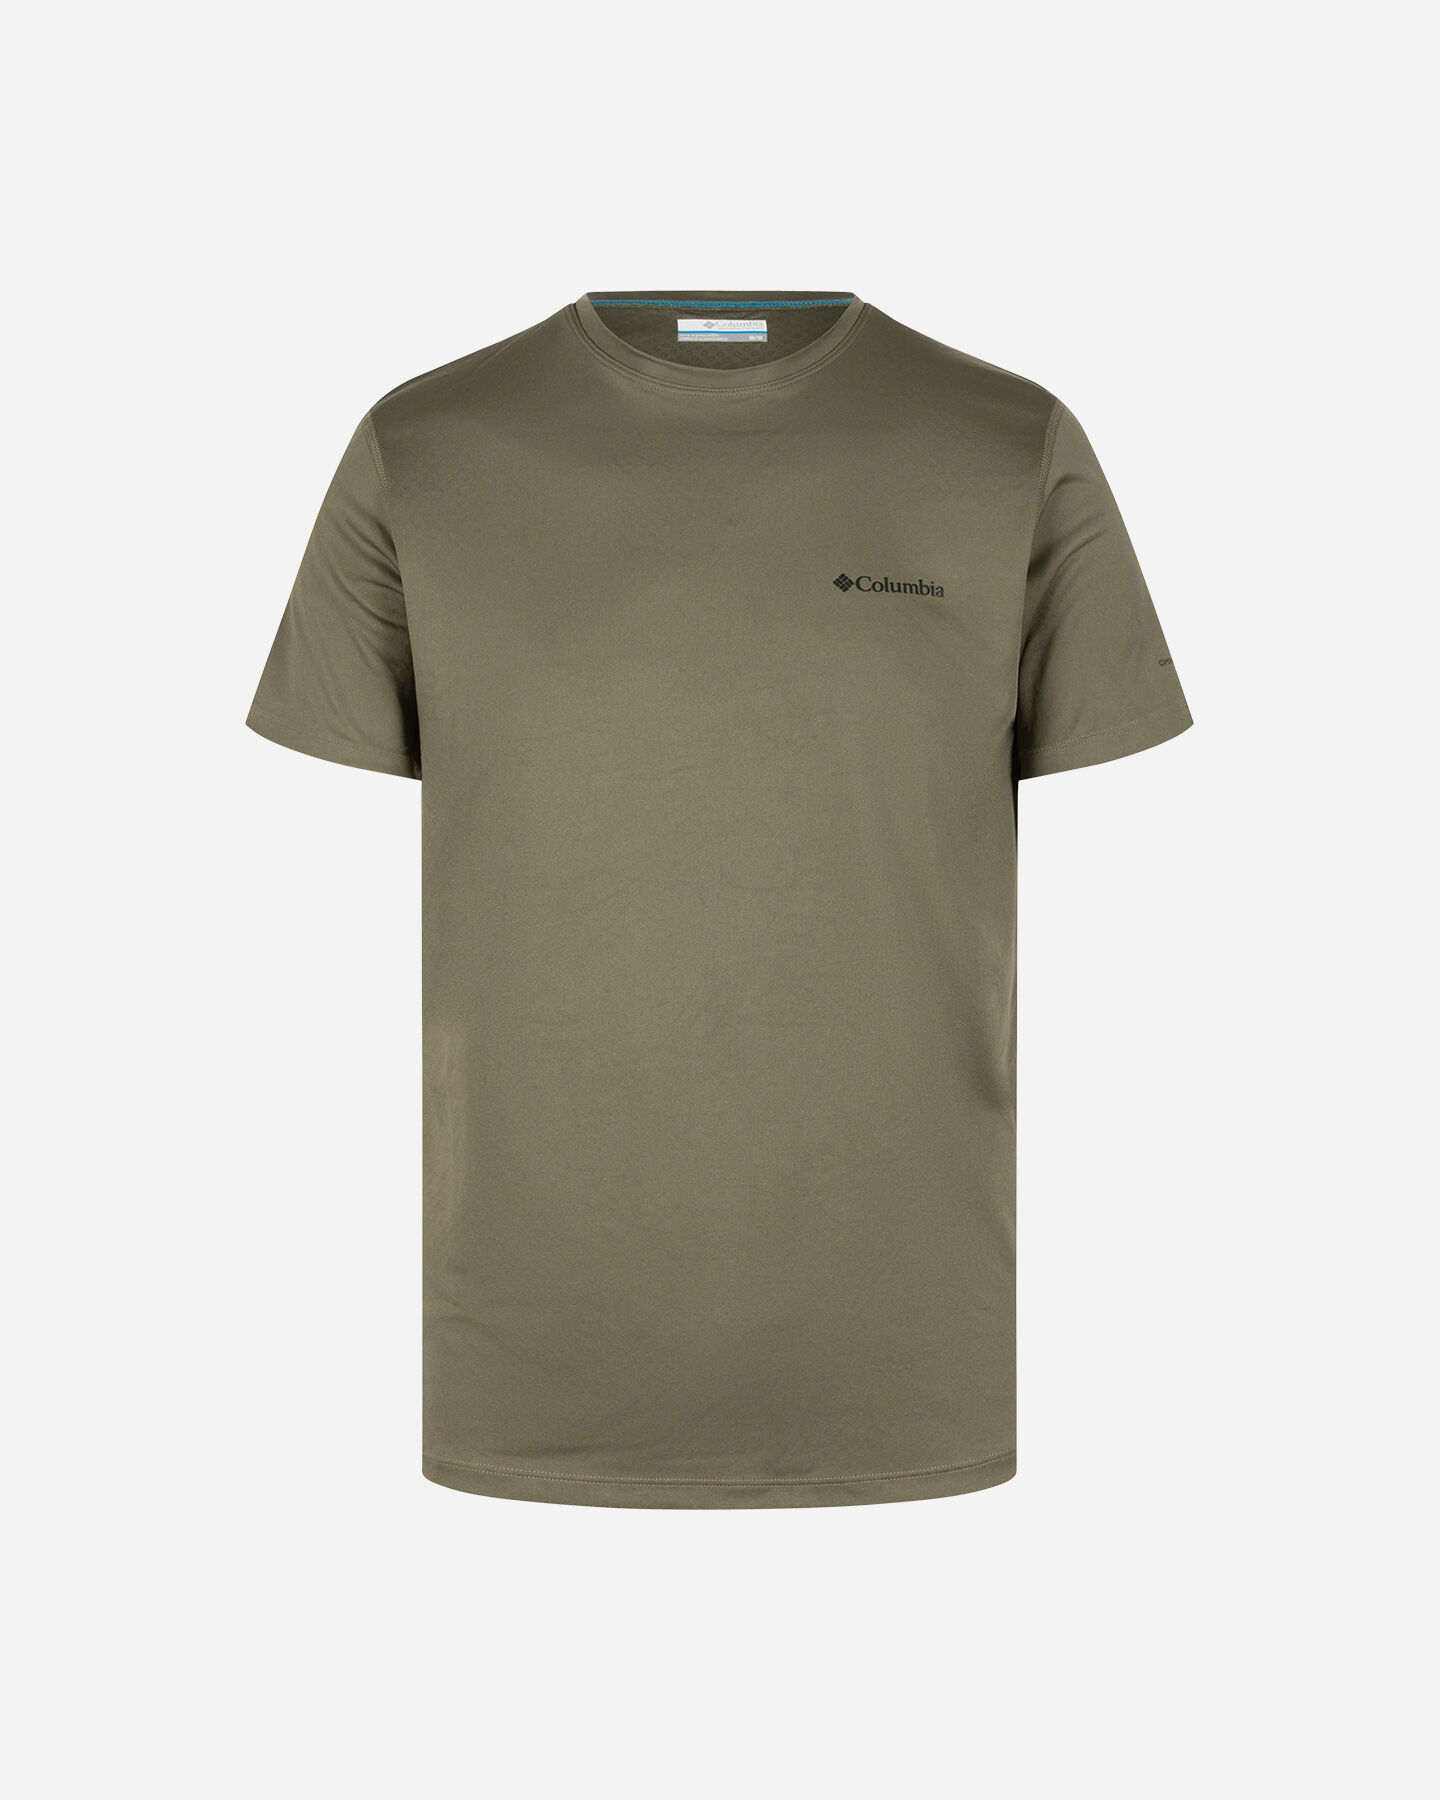  T-Shirt COLUMBIA ZERO RULES M S5291090|397|S scatto 0